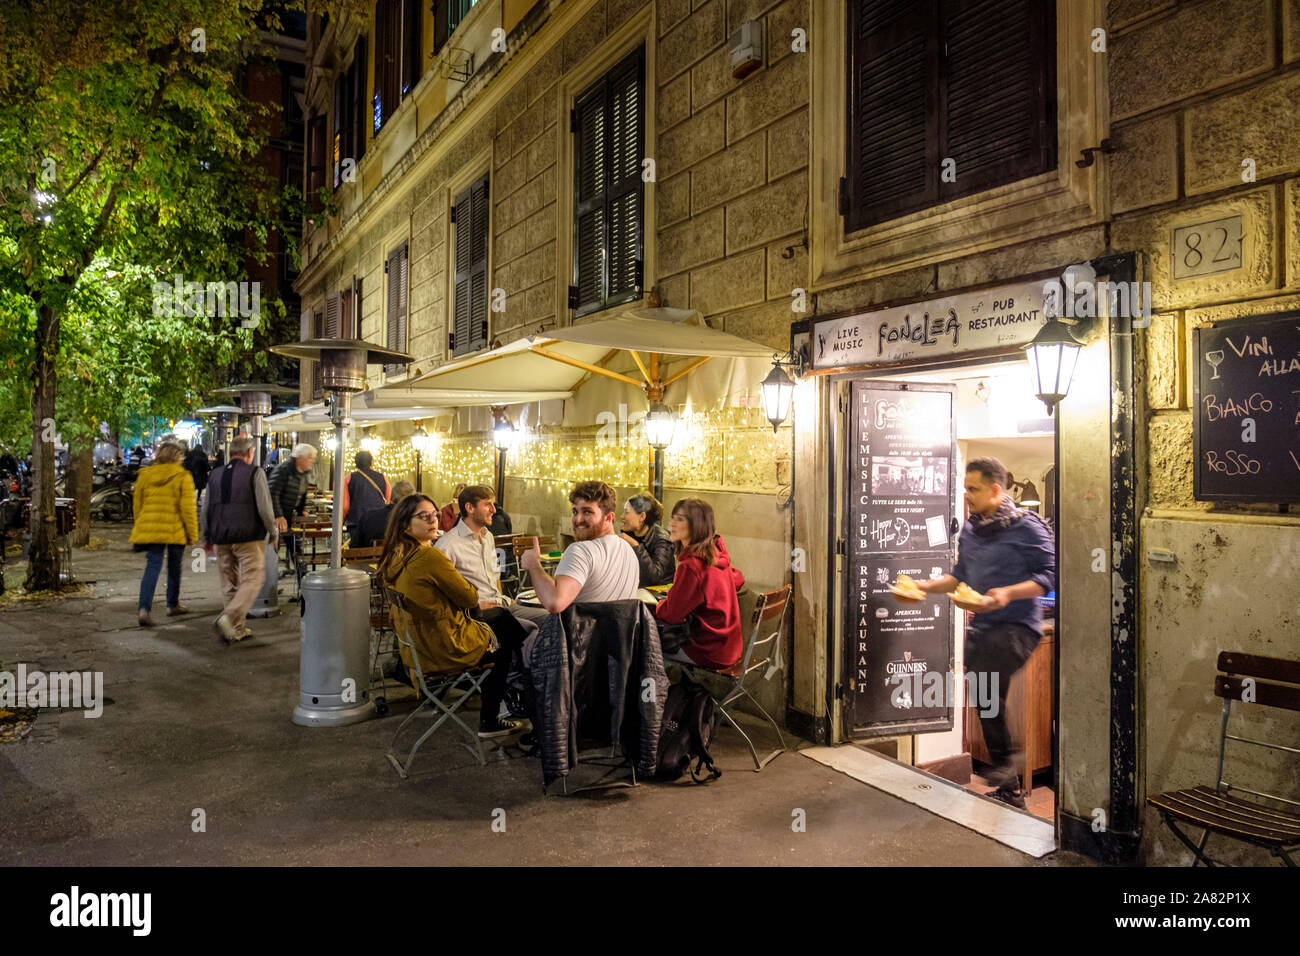 Comidas al aire libre, clientes sentados en la acera fuera del restaurante Fonclea SRL, pub tradicional con música en vivo, barrio Prati, Roma, Italia Foto de stock